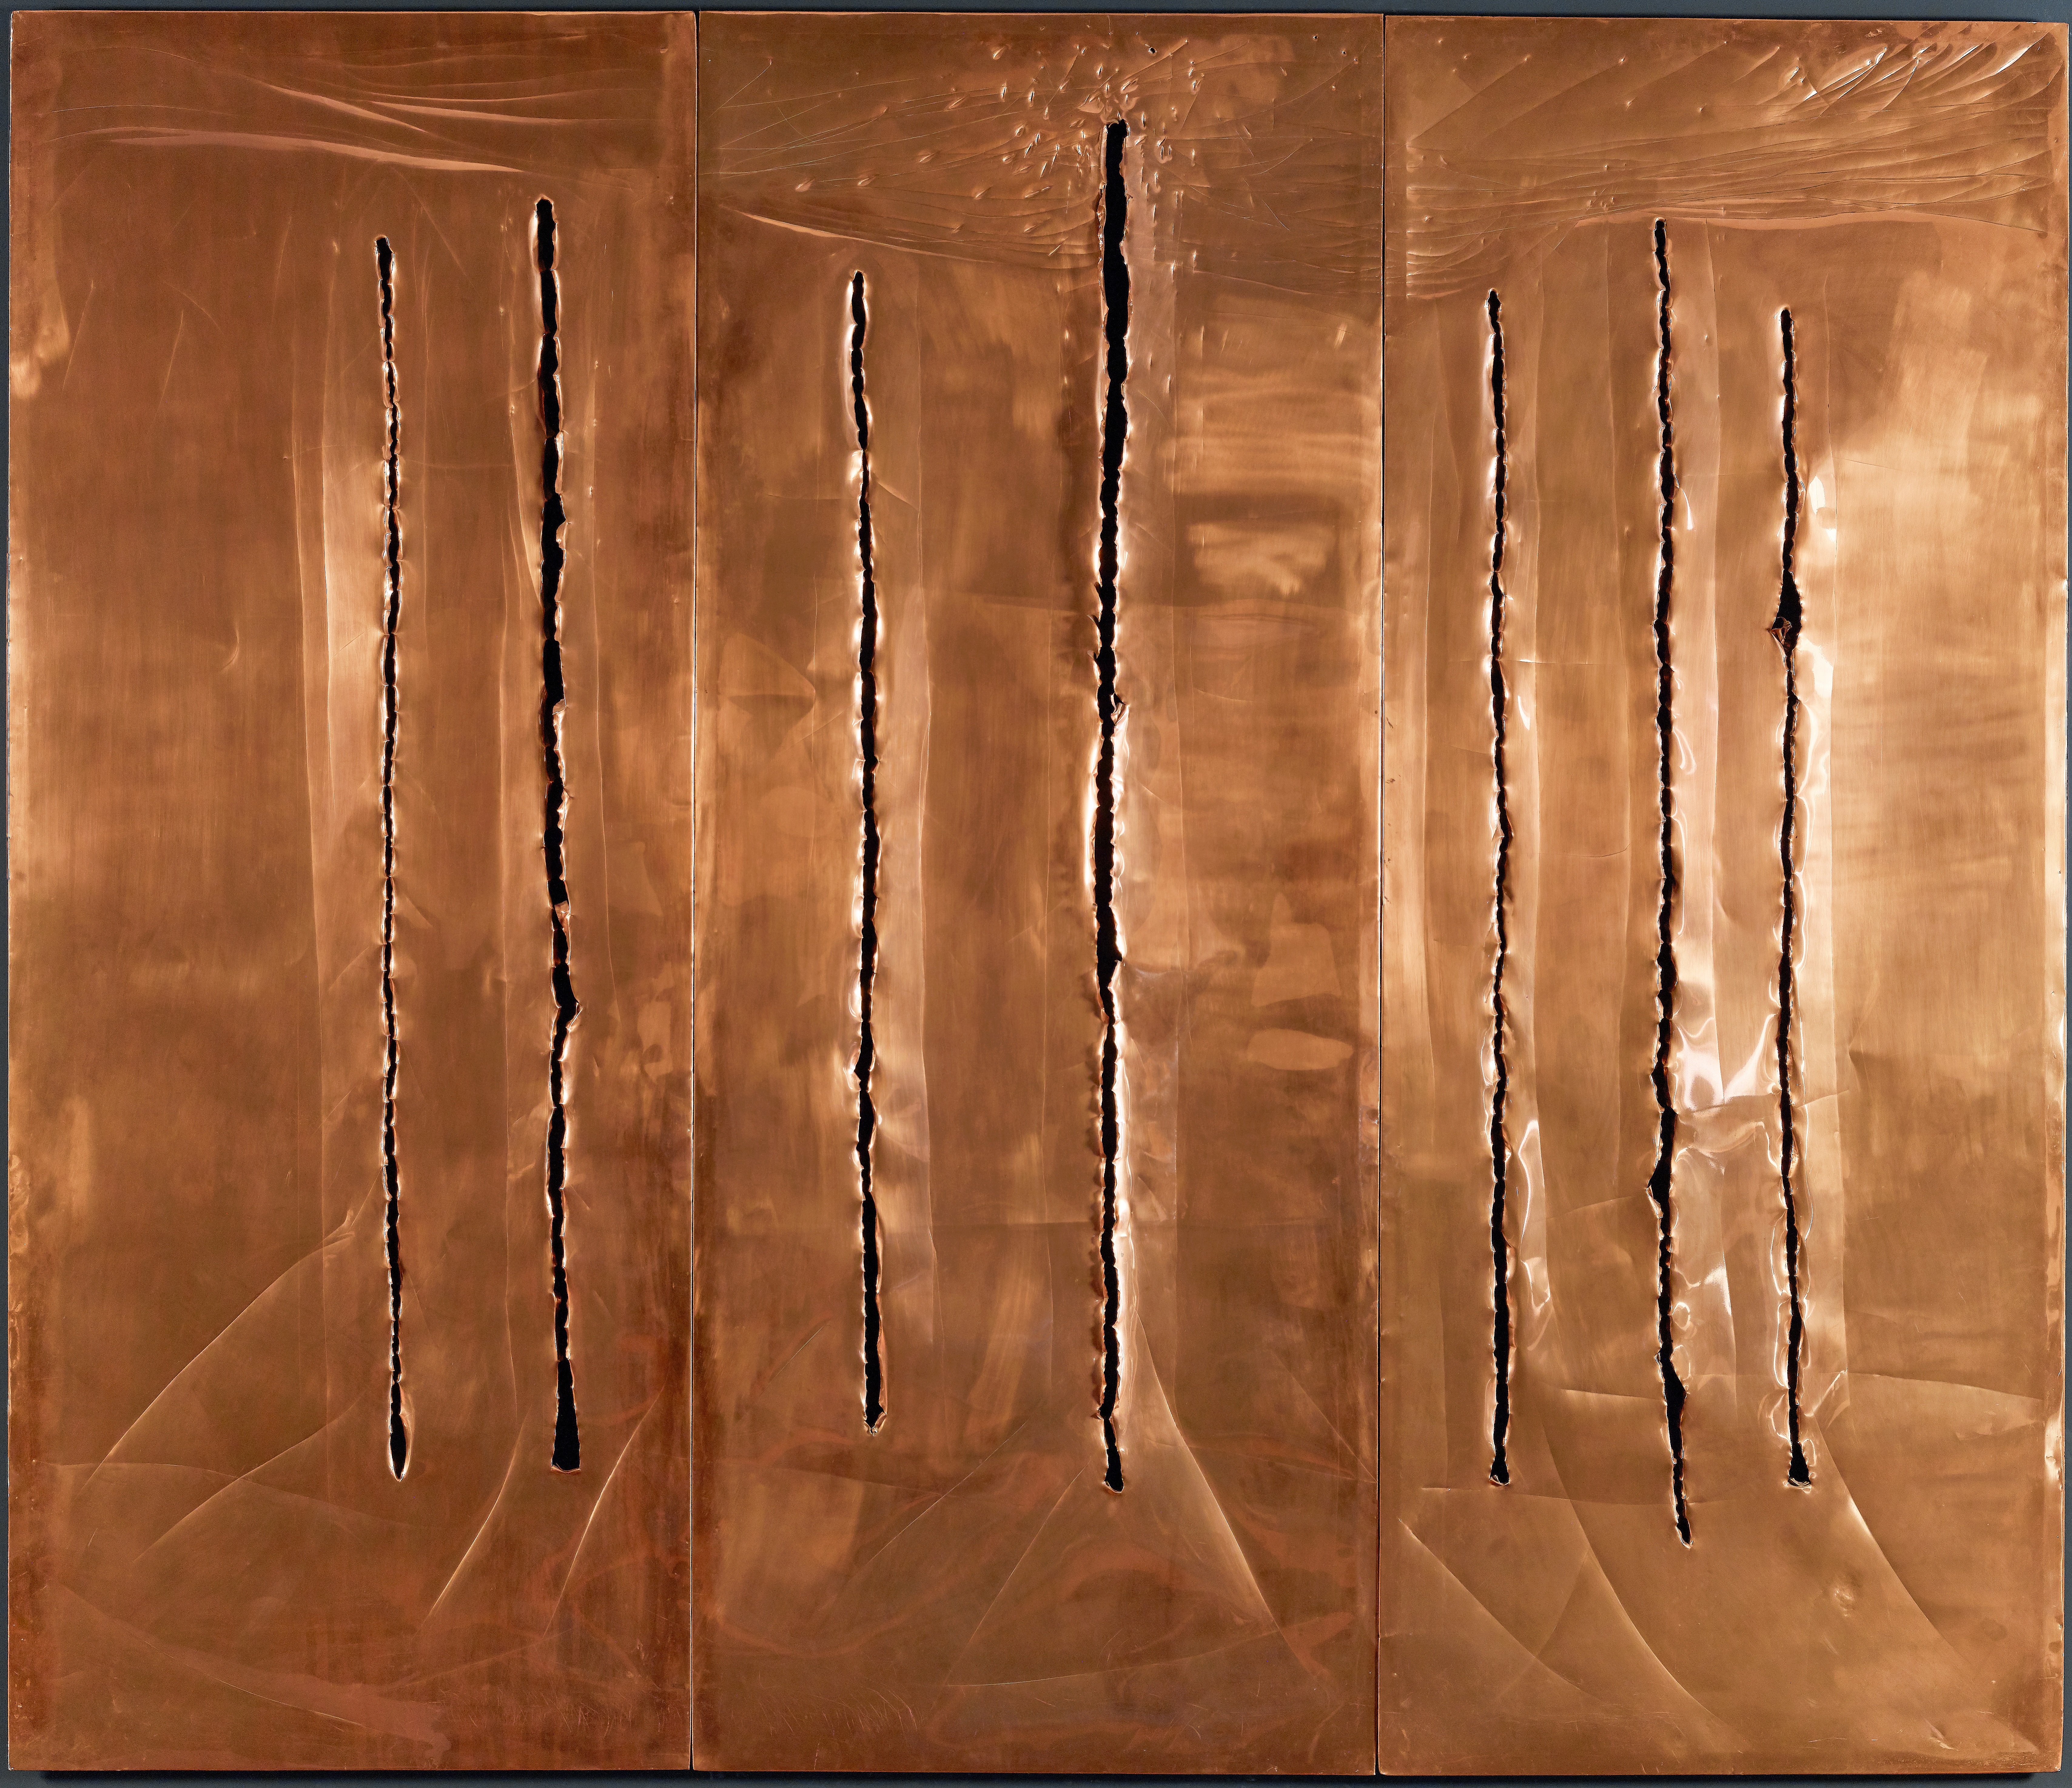 CONCETTO SPAZIALE. NEW YORK 10 1962 Copper with cuts and scratches 94 x 234 cm. Copyright : Fondazione Lucio Fontana, Milano